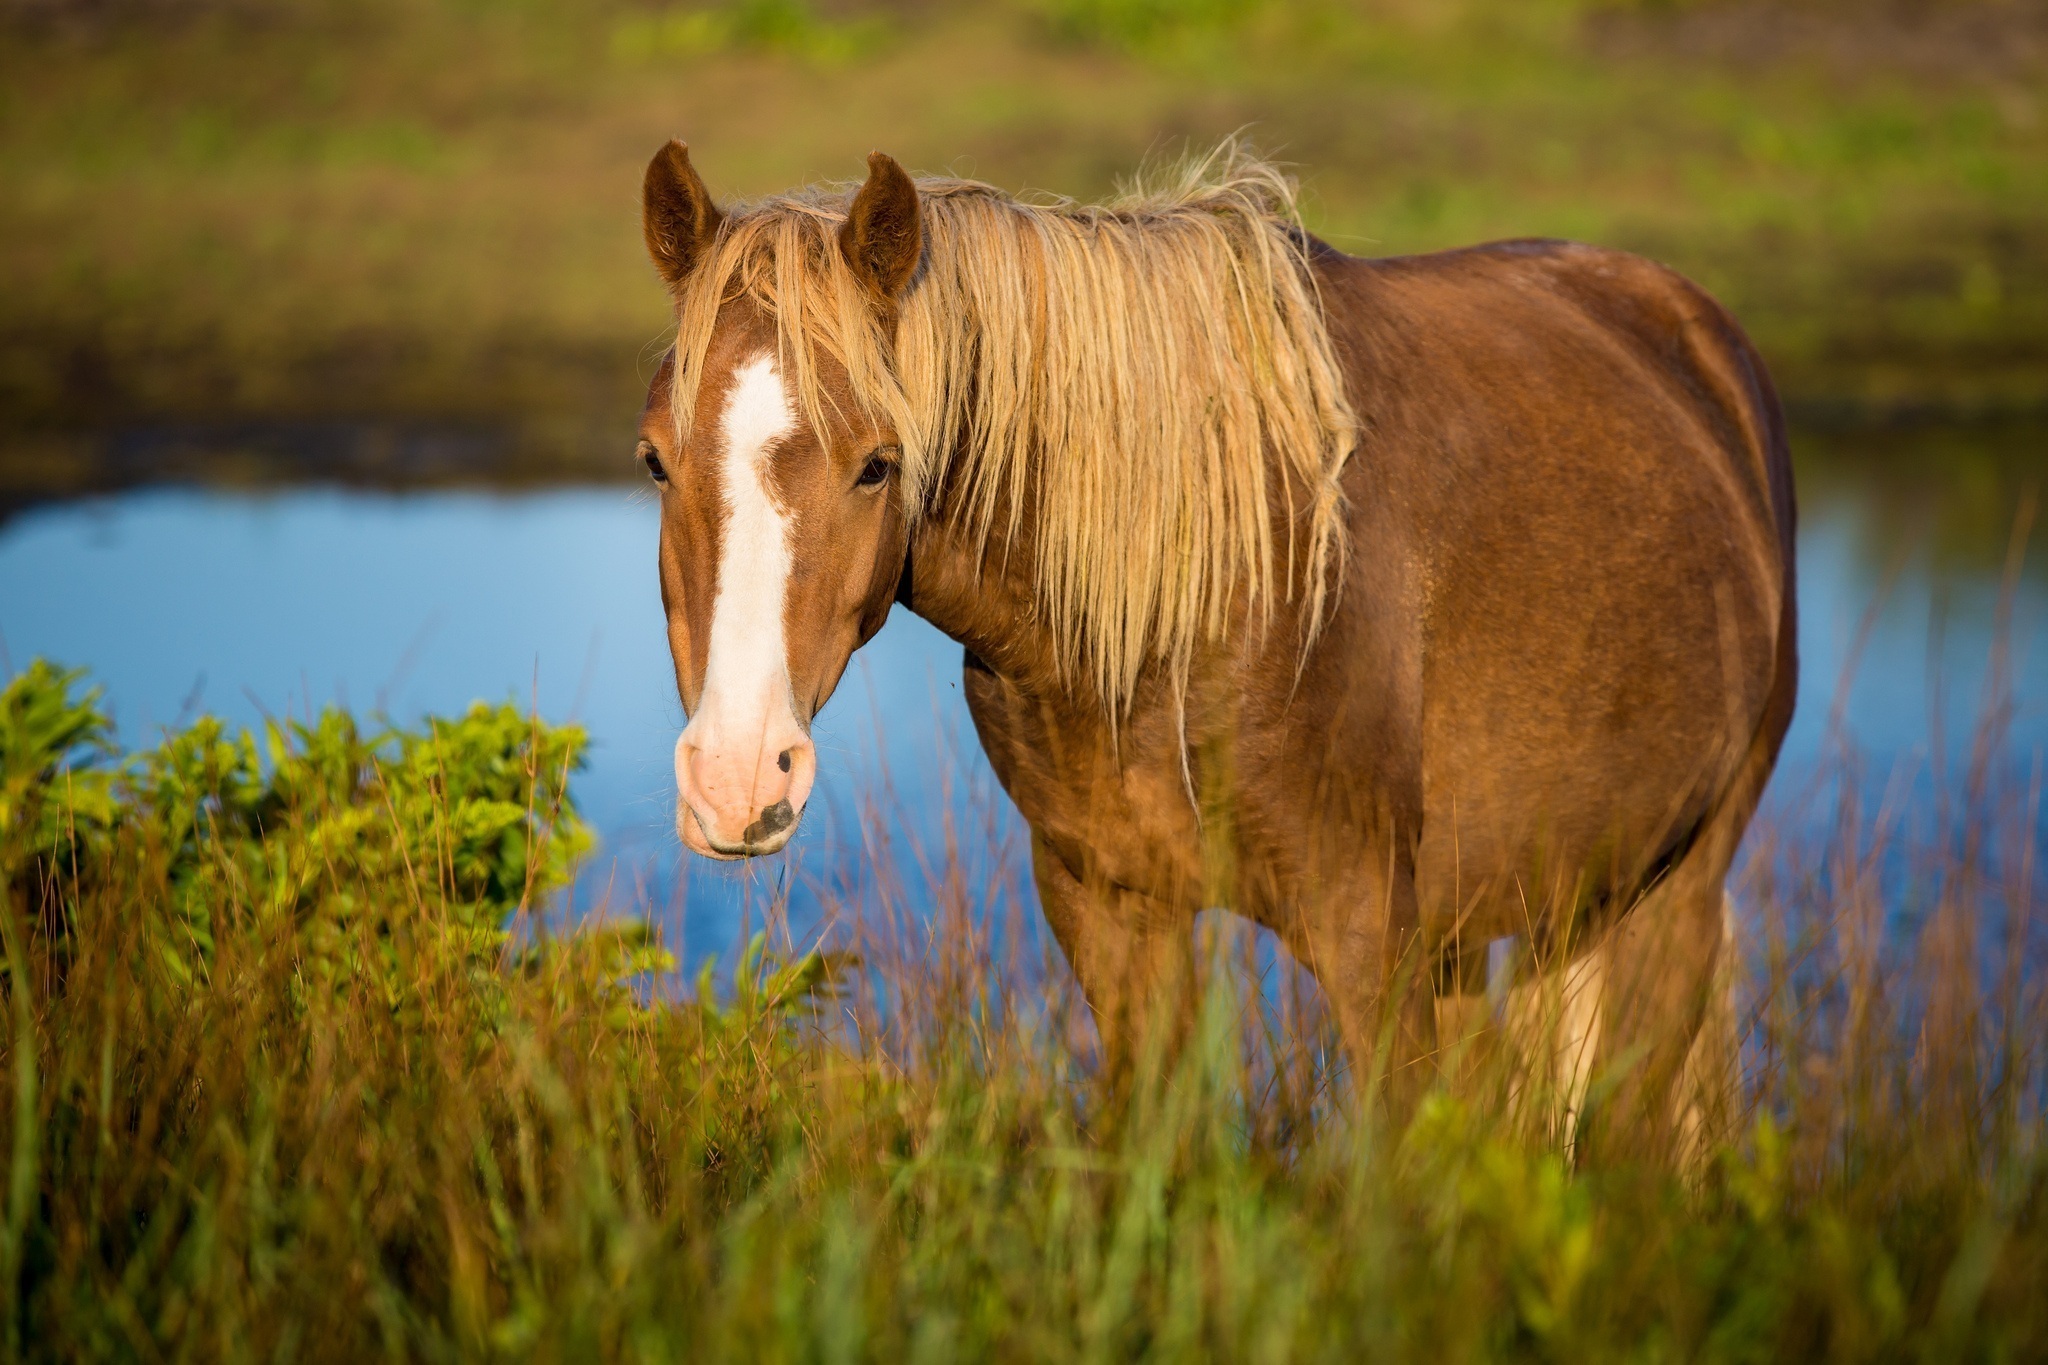 Horse pictures. Красивые лошади. Очень красивые лошади. Красивый конь. Картинки лошадей красивые.